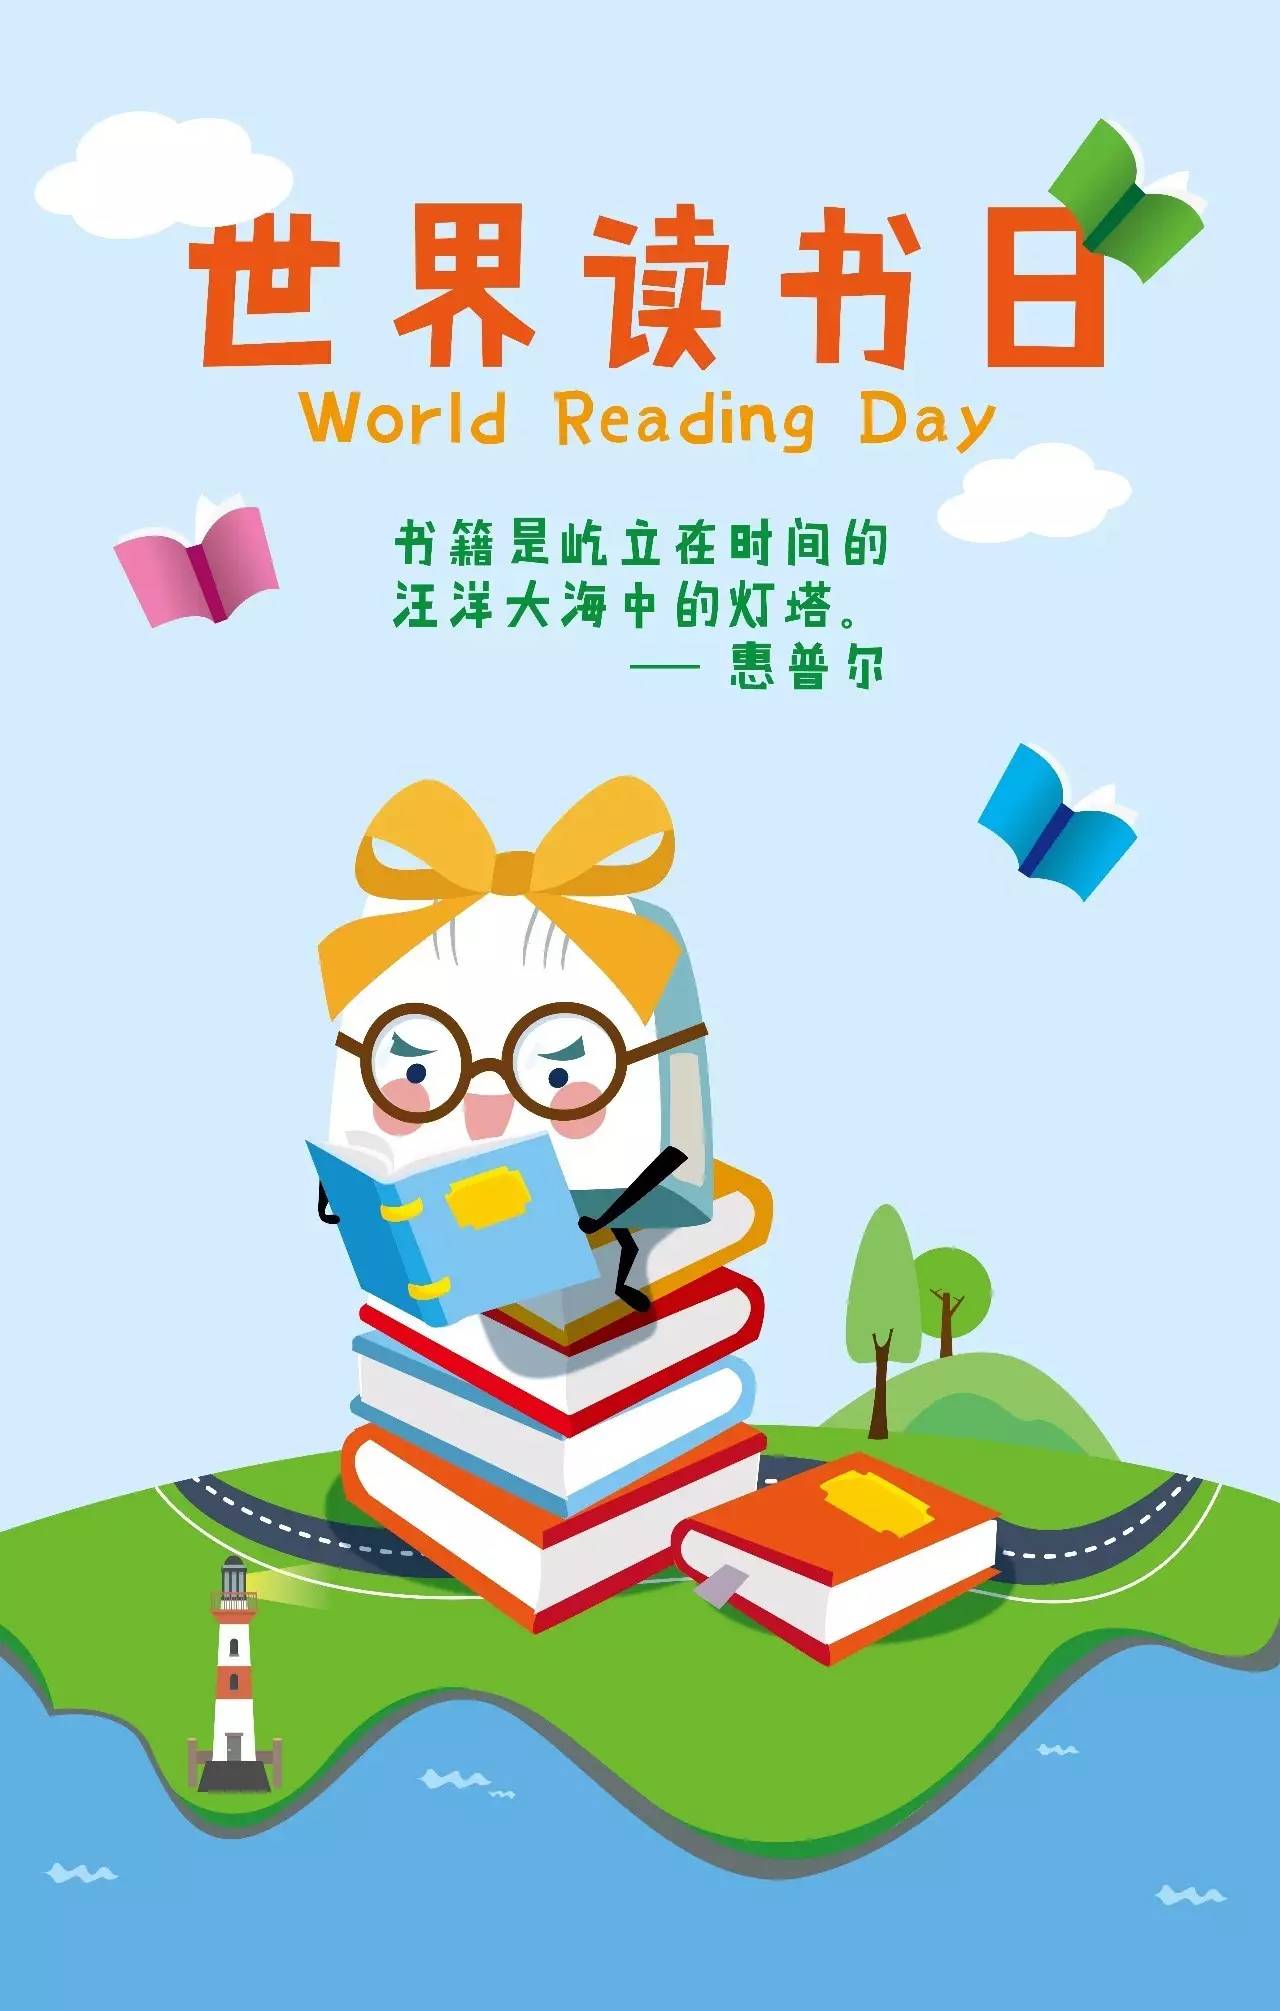 今天是世界阅读日,对于爱读书的人来说,梁文道说了一句很有代表性的话